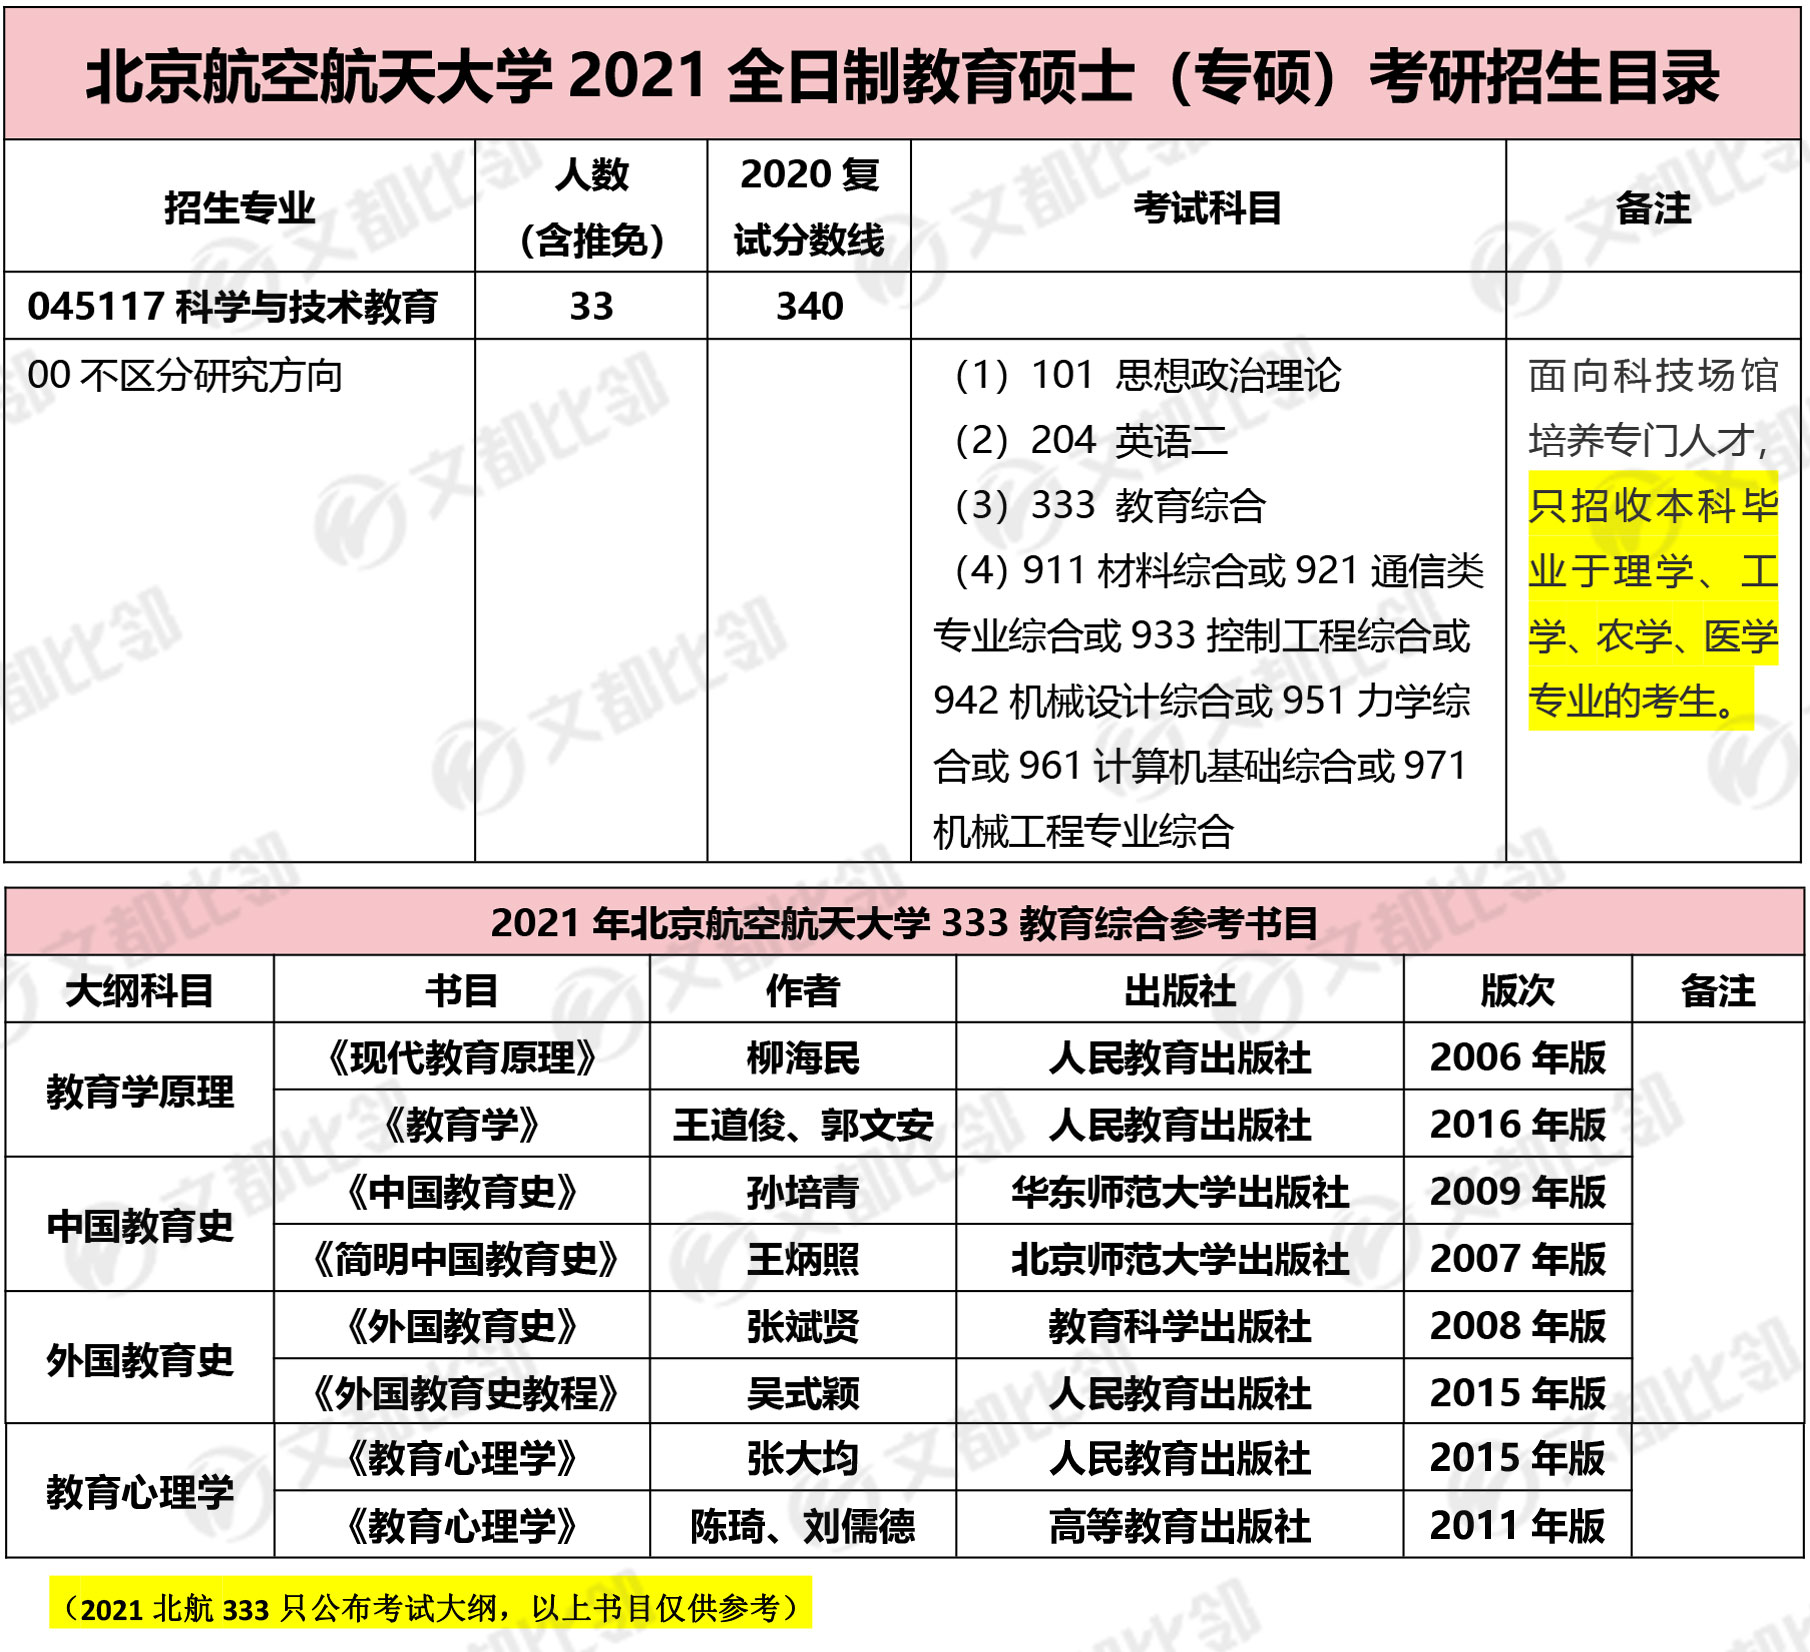 北京航空航天大学教育硕士考研招生目录,2021年教育硕士考研招生目录,2021年考研招生目录